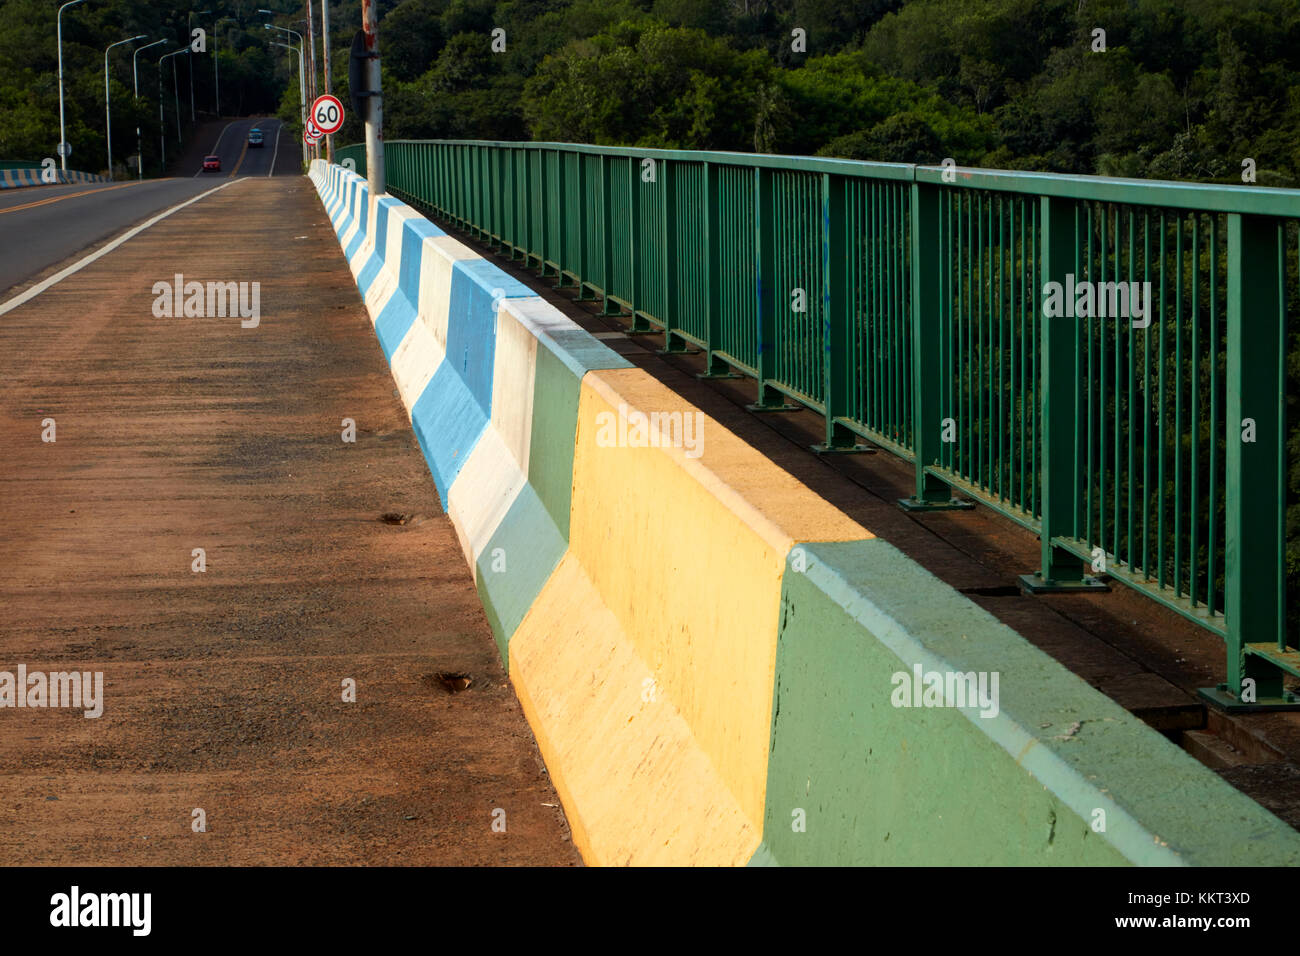 Internationale Grenze auf der Brücke über den Fluss Iguazu, Brasilien - Argentinien, Südamerika Stockfoto